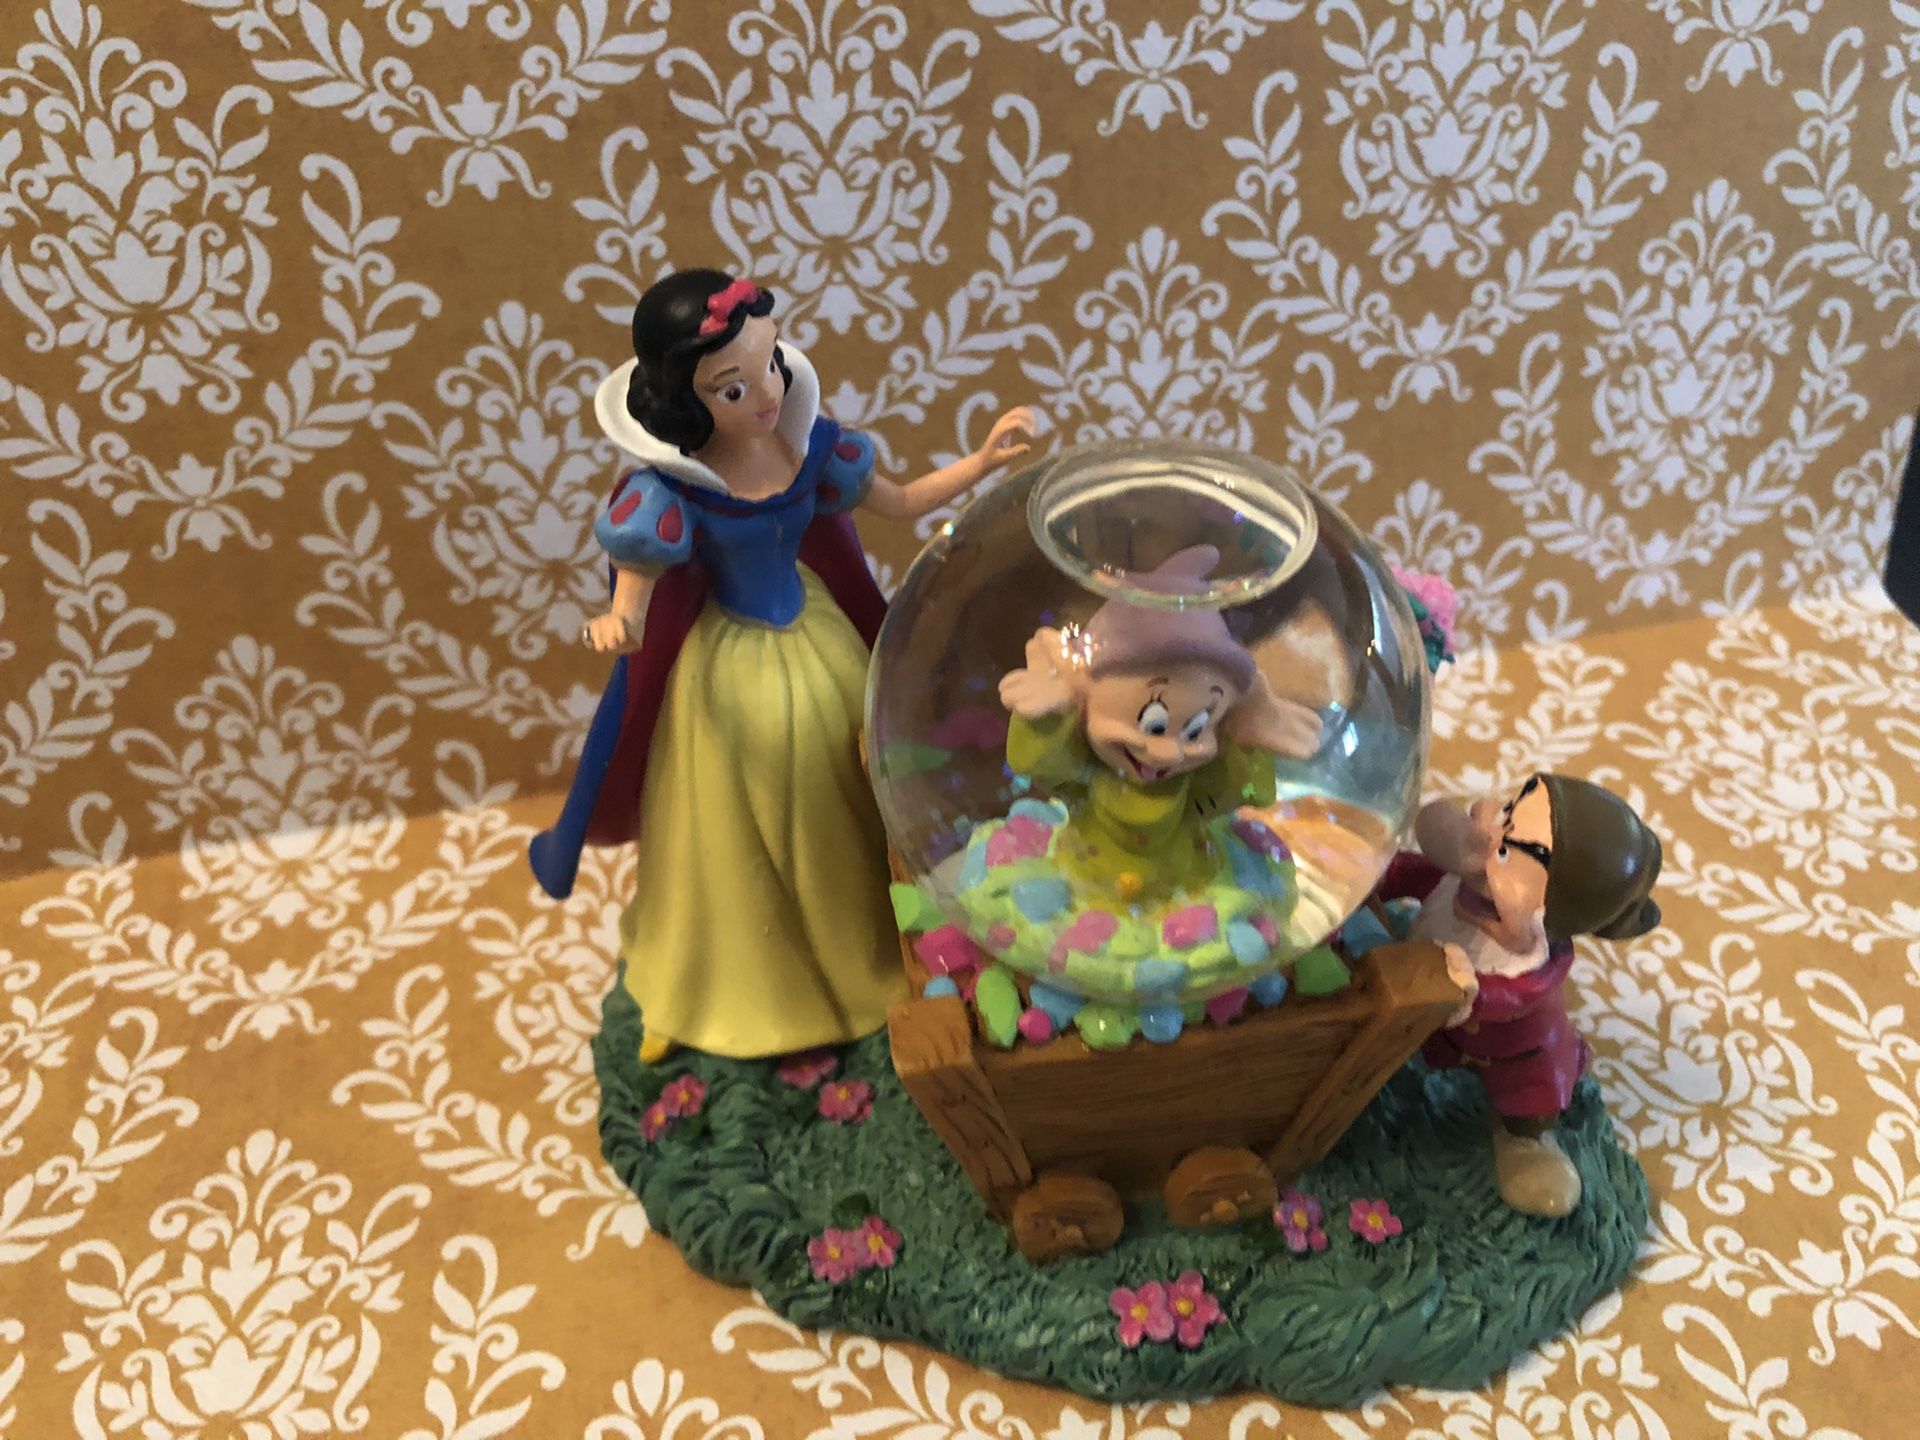 Disney Snow White snow globe